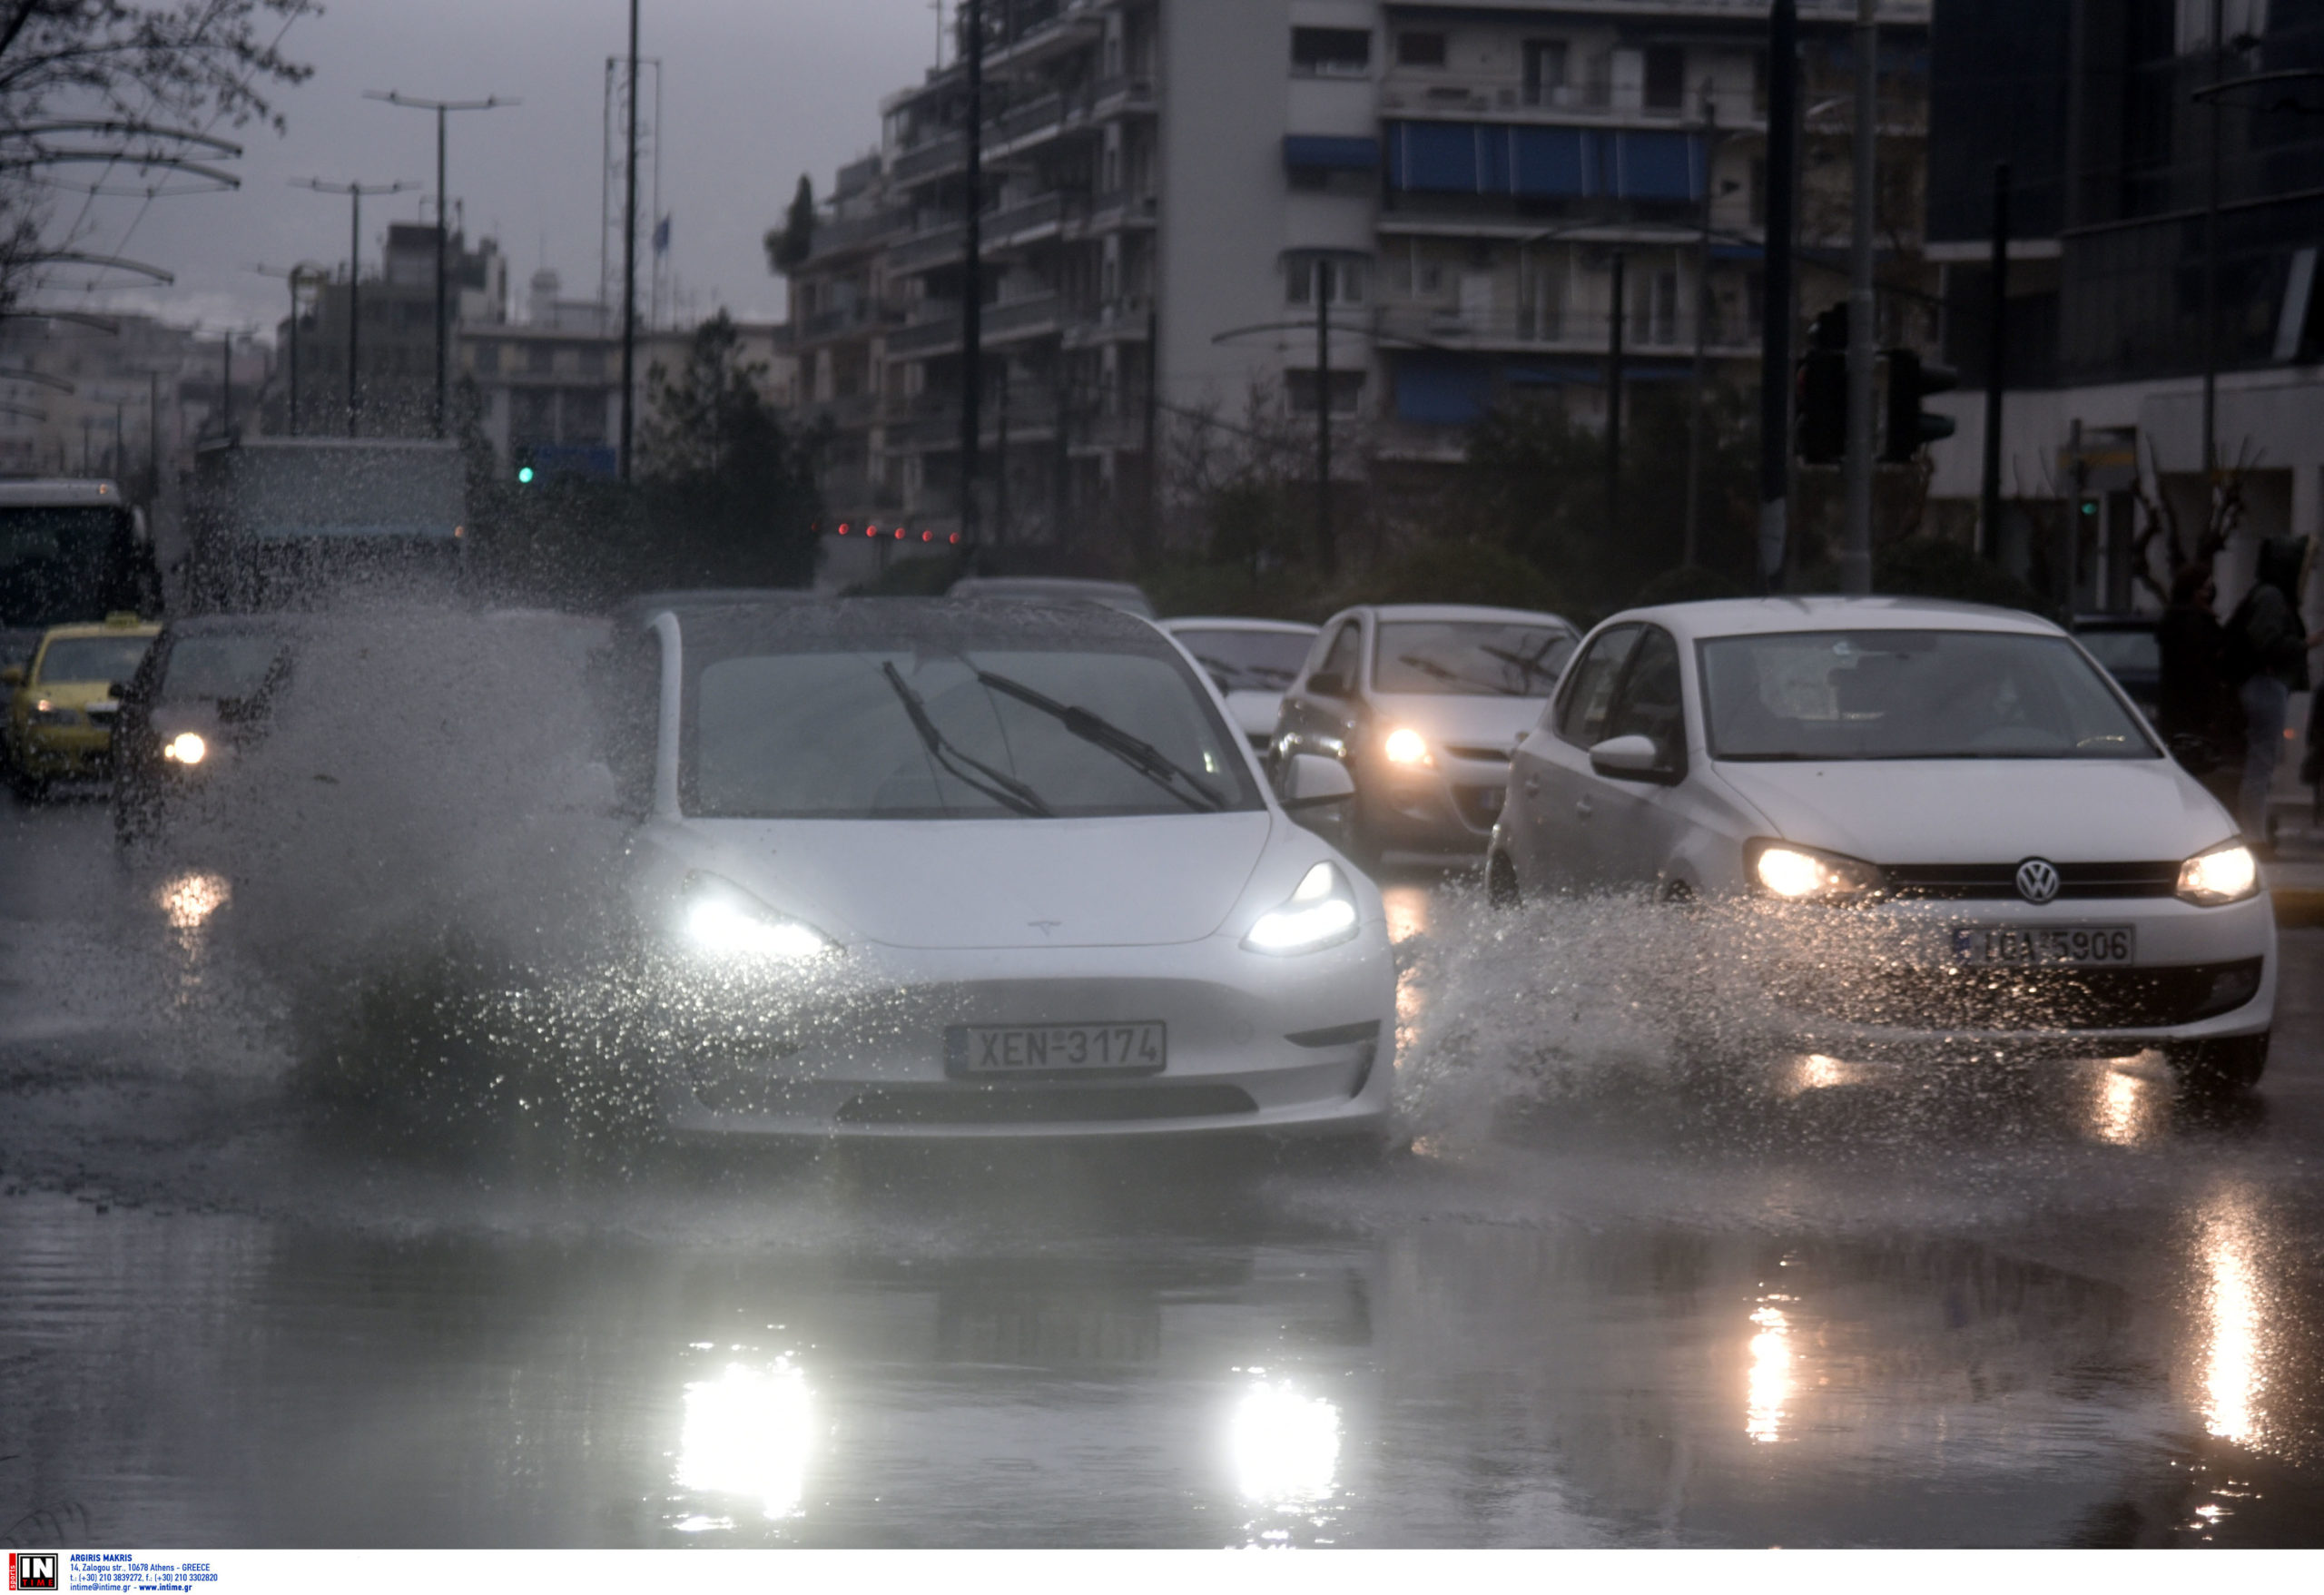 Νέα σύσκεψη στην Πολιτική Προστασία ενόψει της κακοκαιρίας – Βροχές και καταιγίδες από Δευτέρα, αγωνία για τη Θεσσαλία